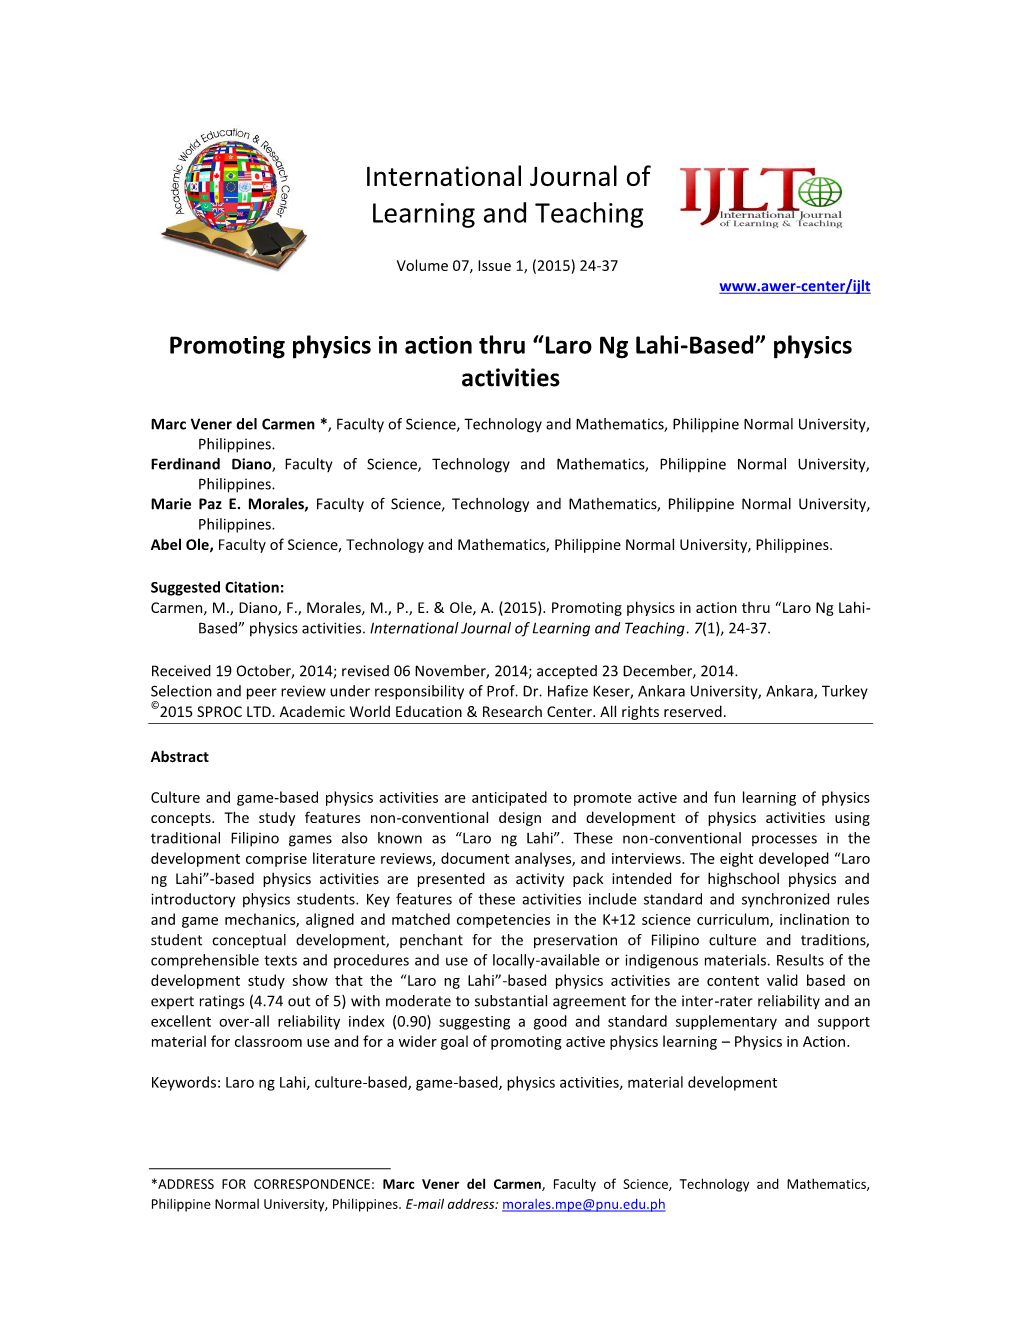 Laro Ng Lahi-Based” Physics Activities